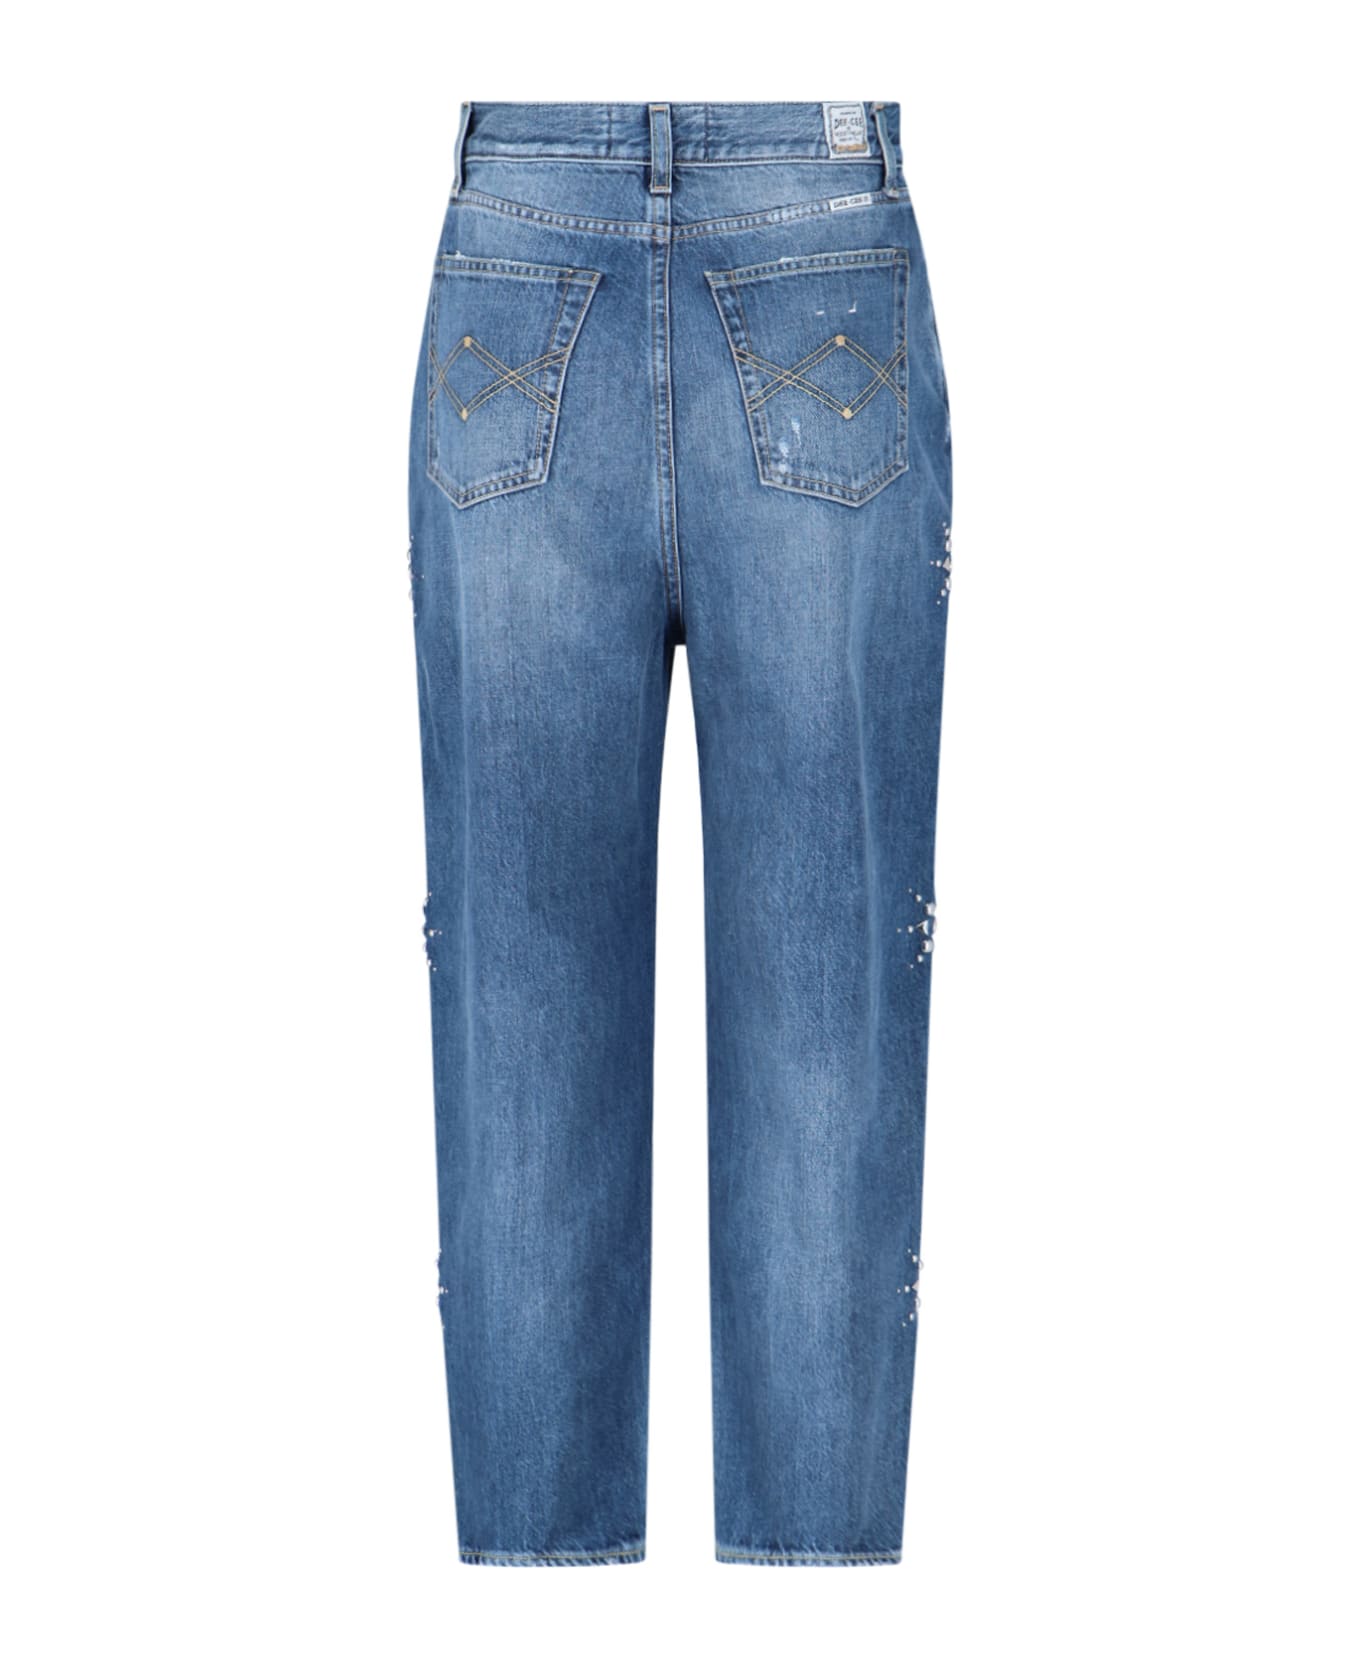 Washington Dee-Cee Studded Detail Jeans - Blue